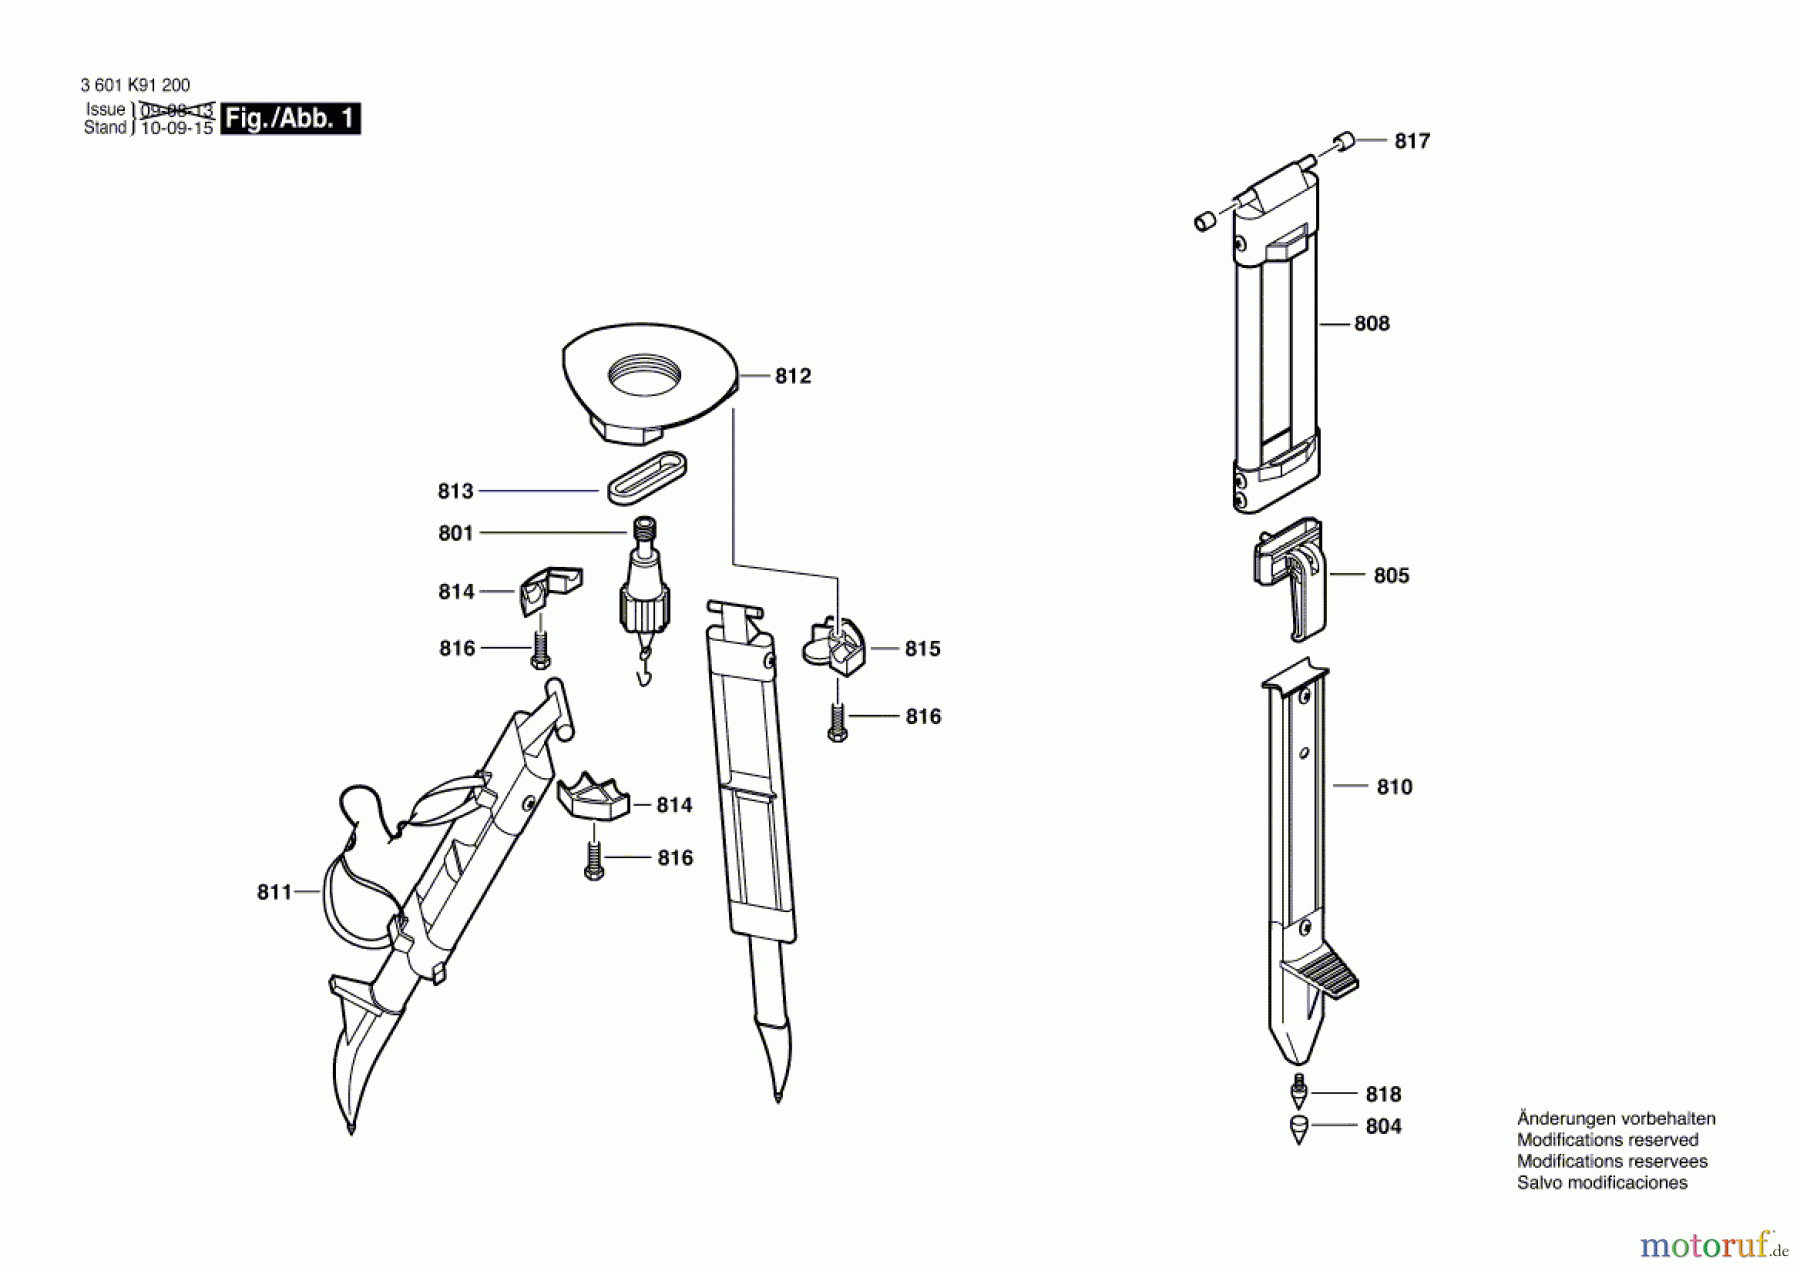  Bosch Werkzeug Stativ BT 160 Seite 1